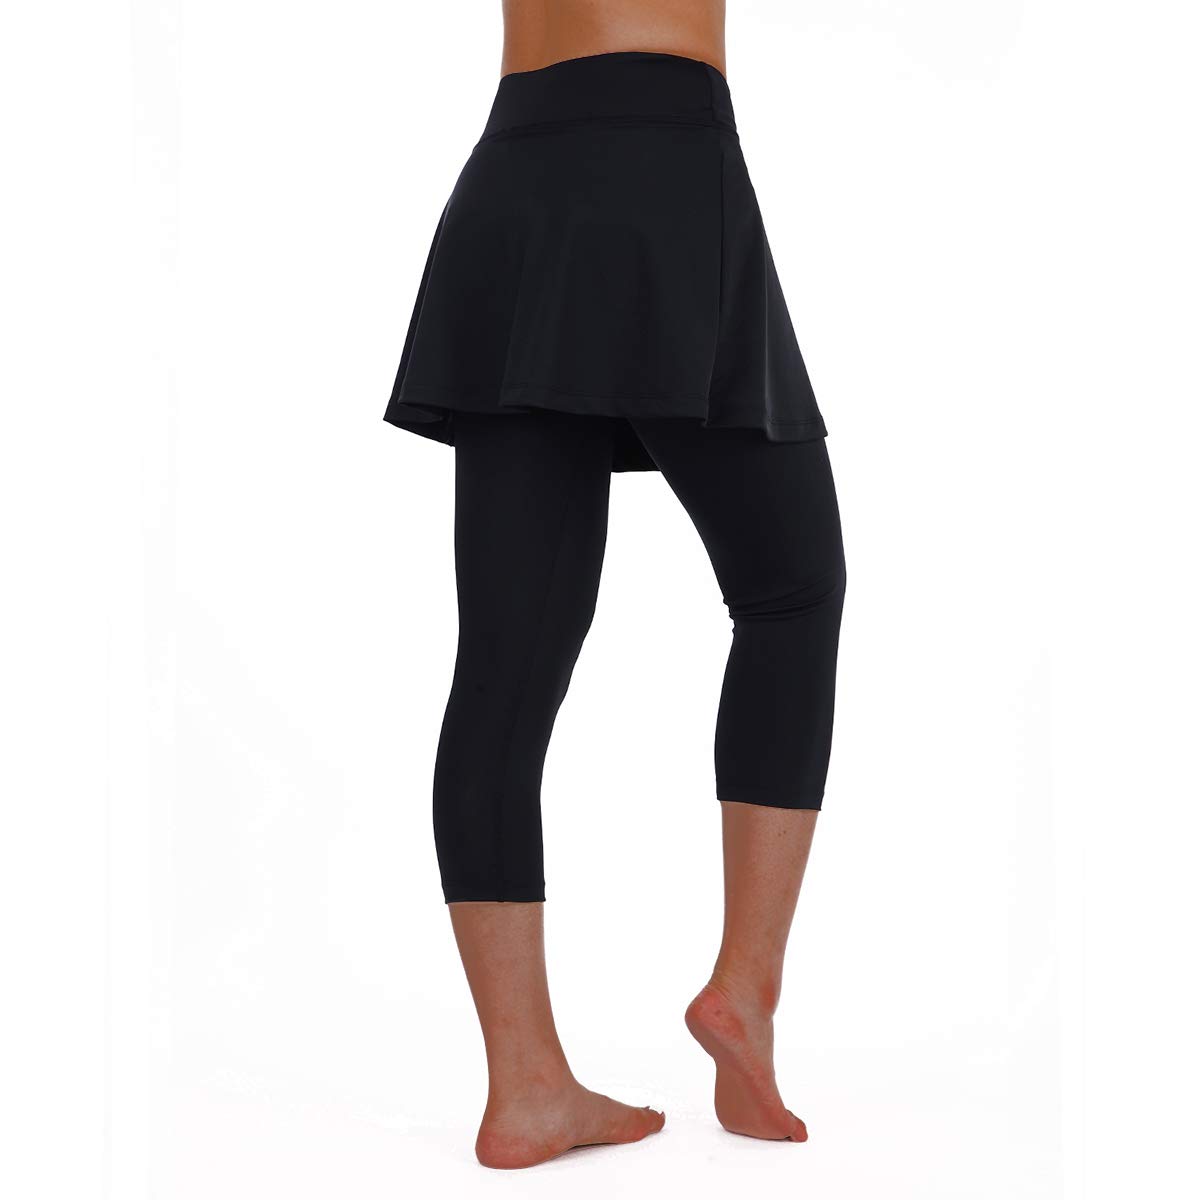  Skirted Leggings for Women with Pockets Yoga Capri